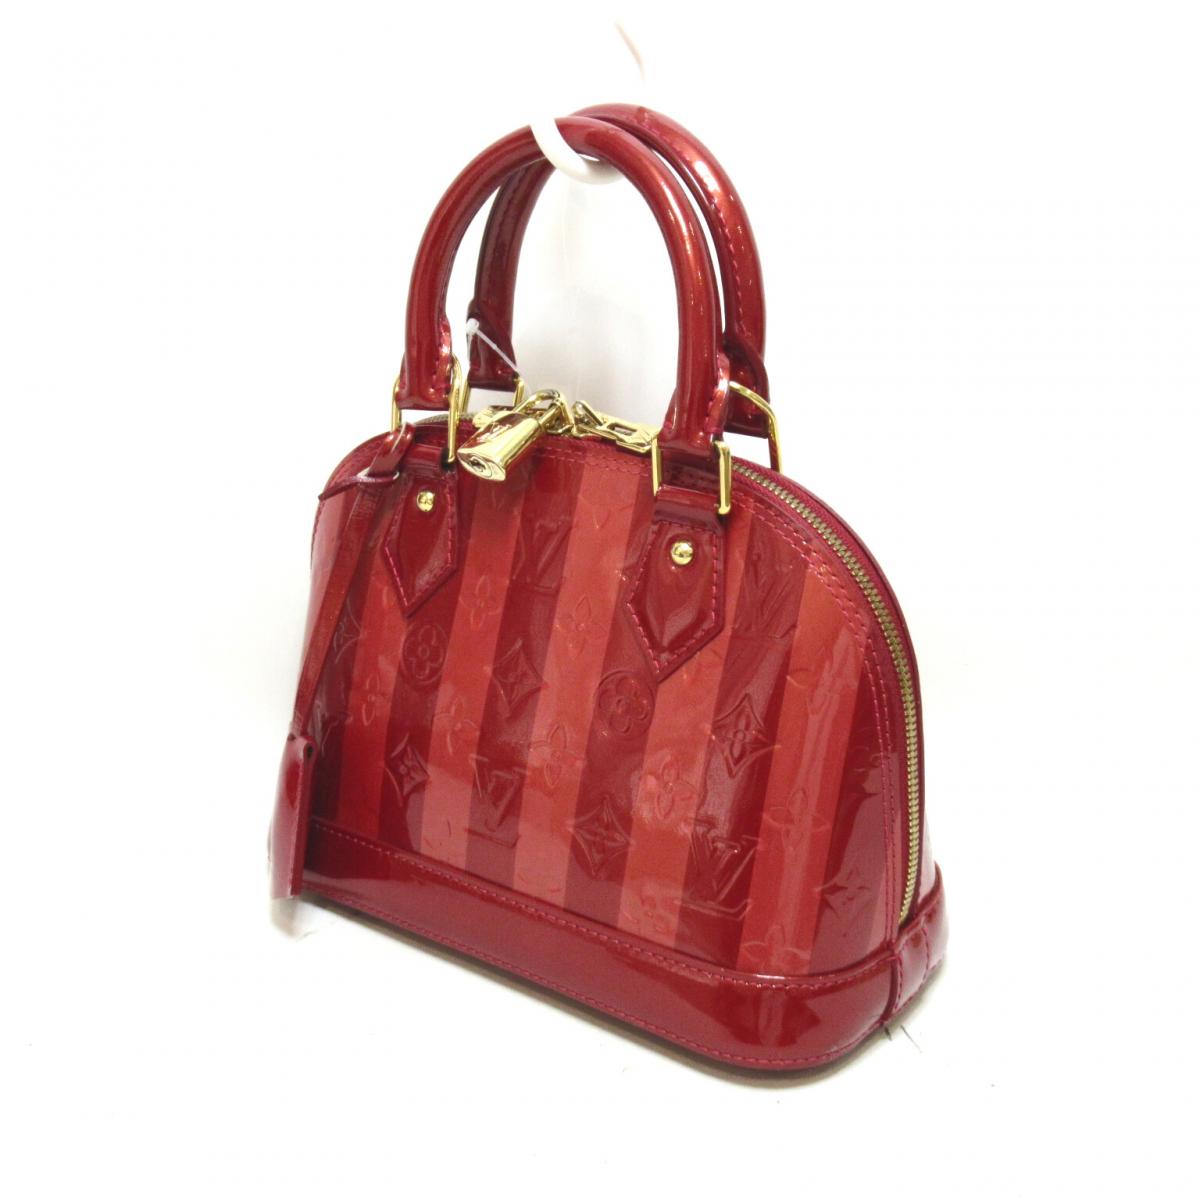 Louis Vuitton Pomme D’amour Monogram Vernis Alma BB Handbag